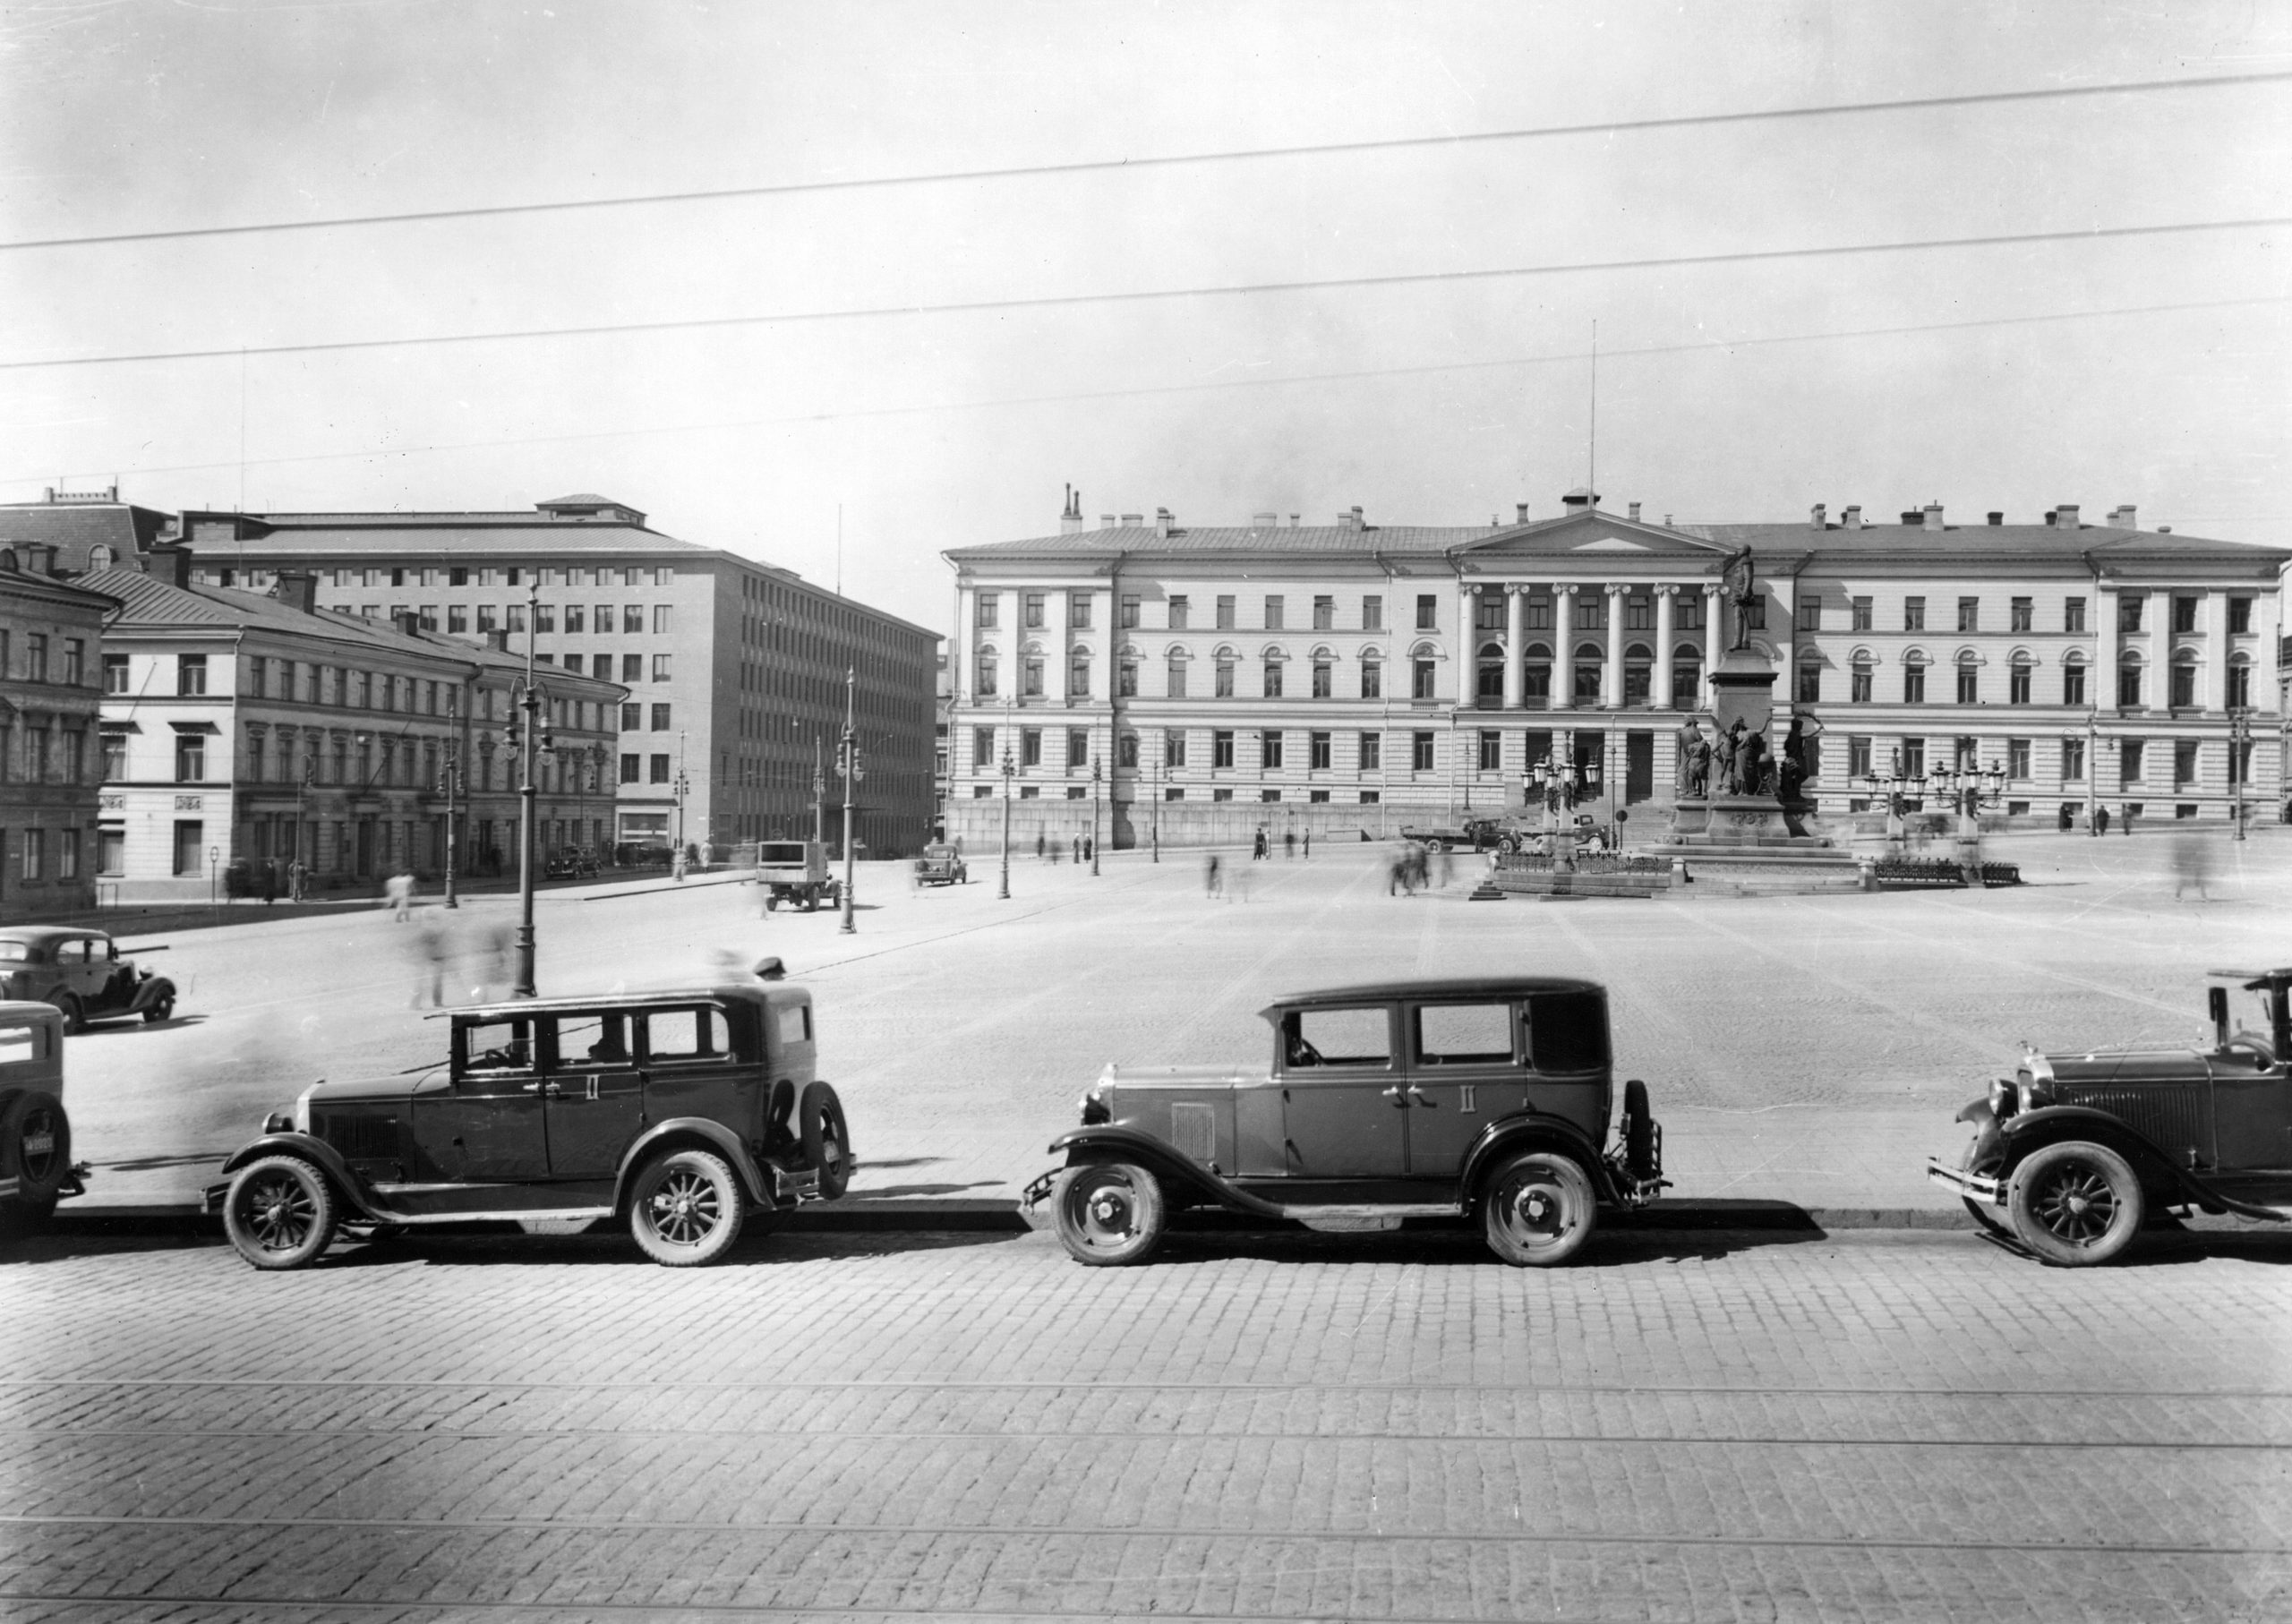 Mustat autot pysäköitynä aution senaatintorin reunalla. Taustalla näkyy vanha Helsingin yliopistorakennus.